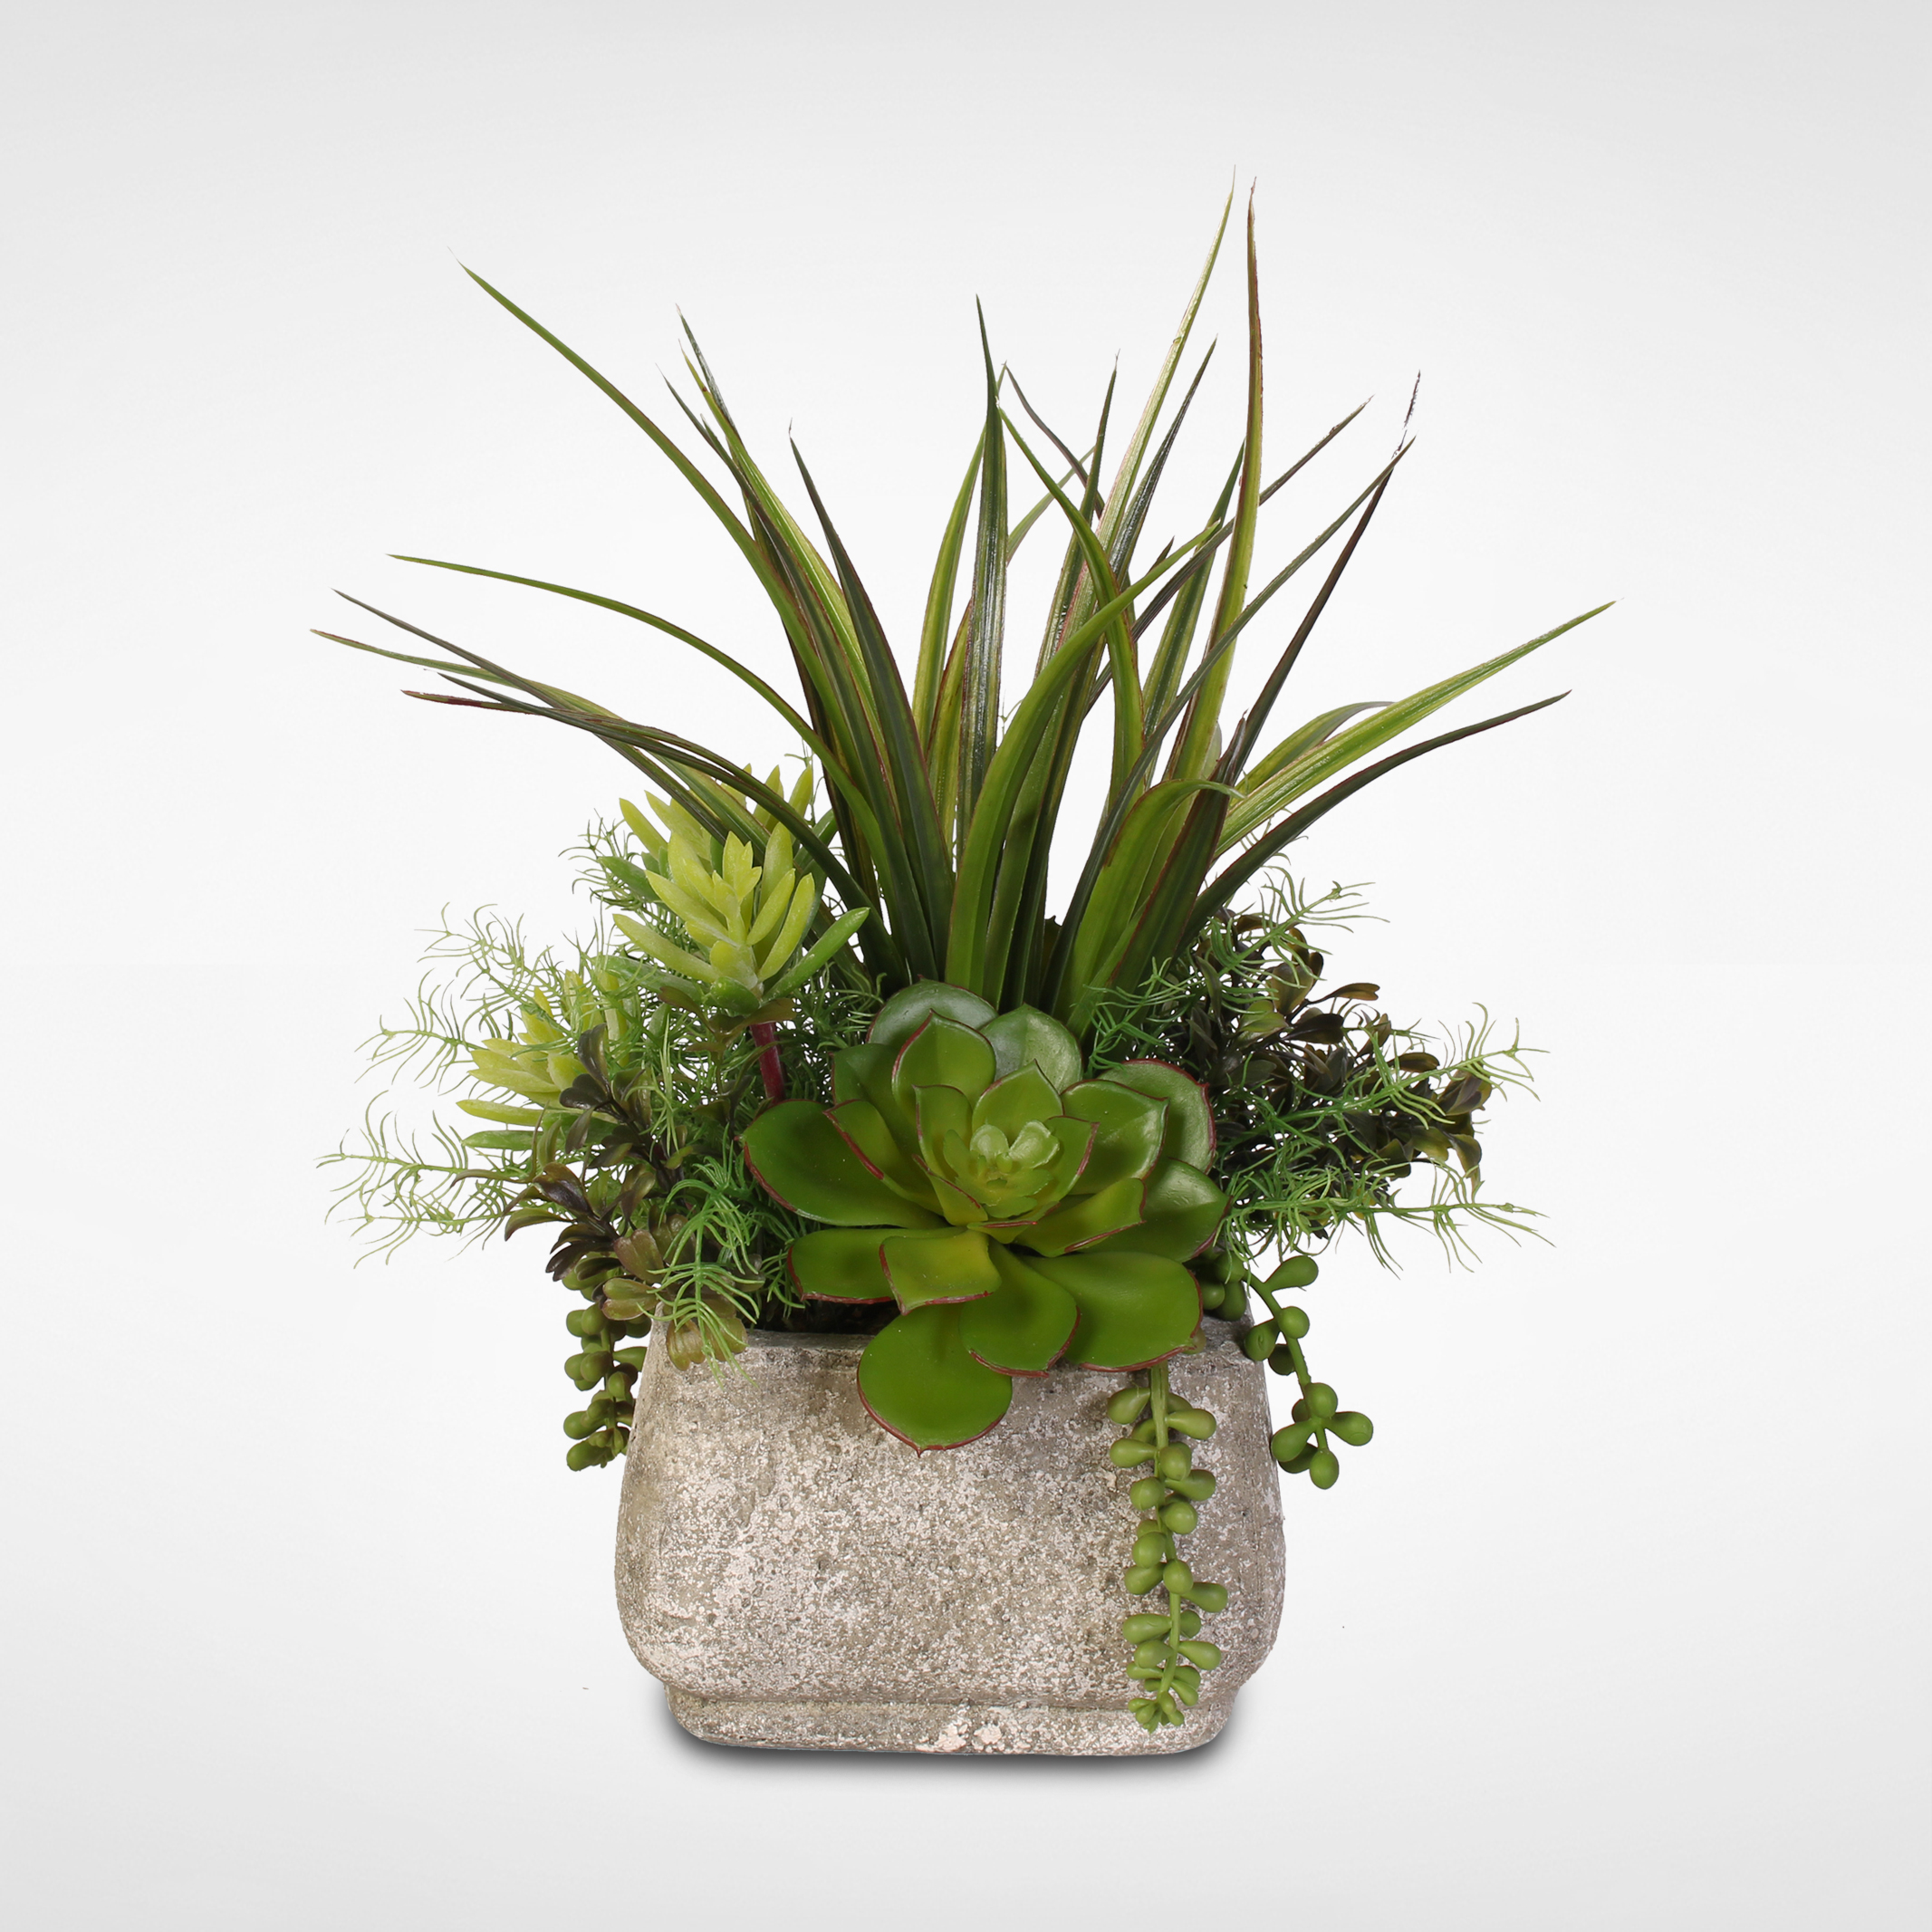 Silk Succulent Arrangement With Grass in a Stone Pot - Walmart.com